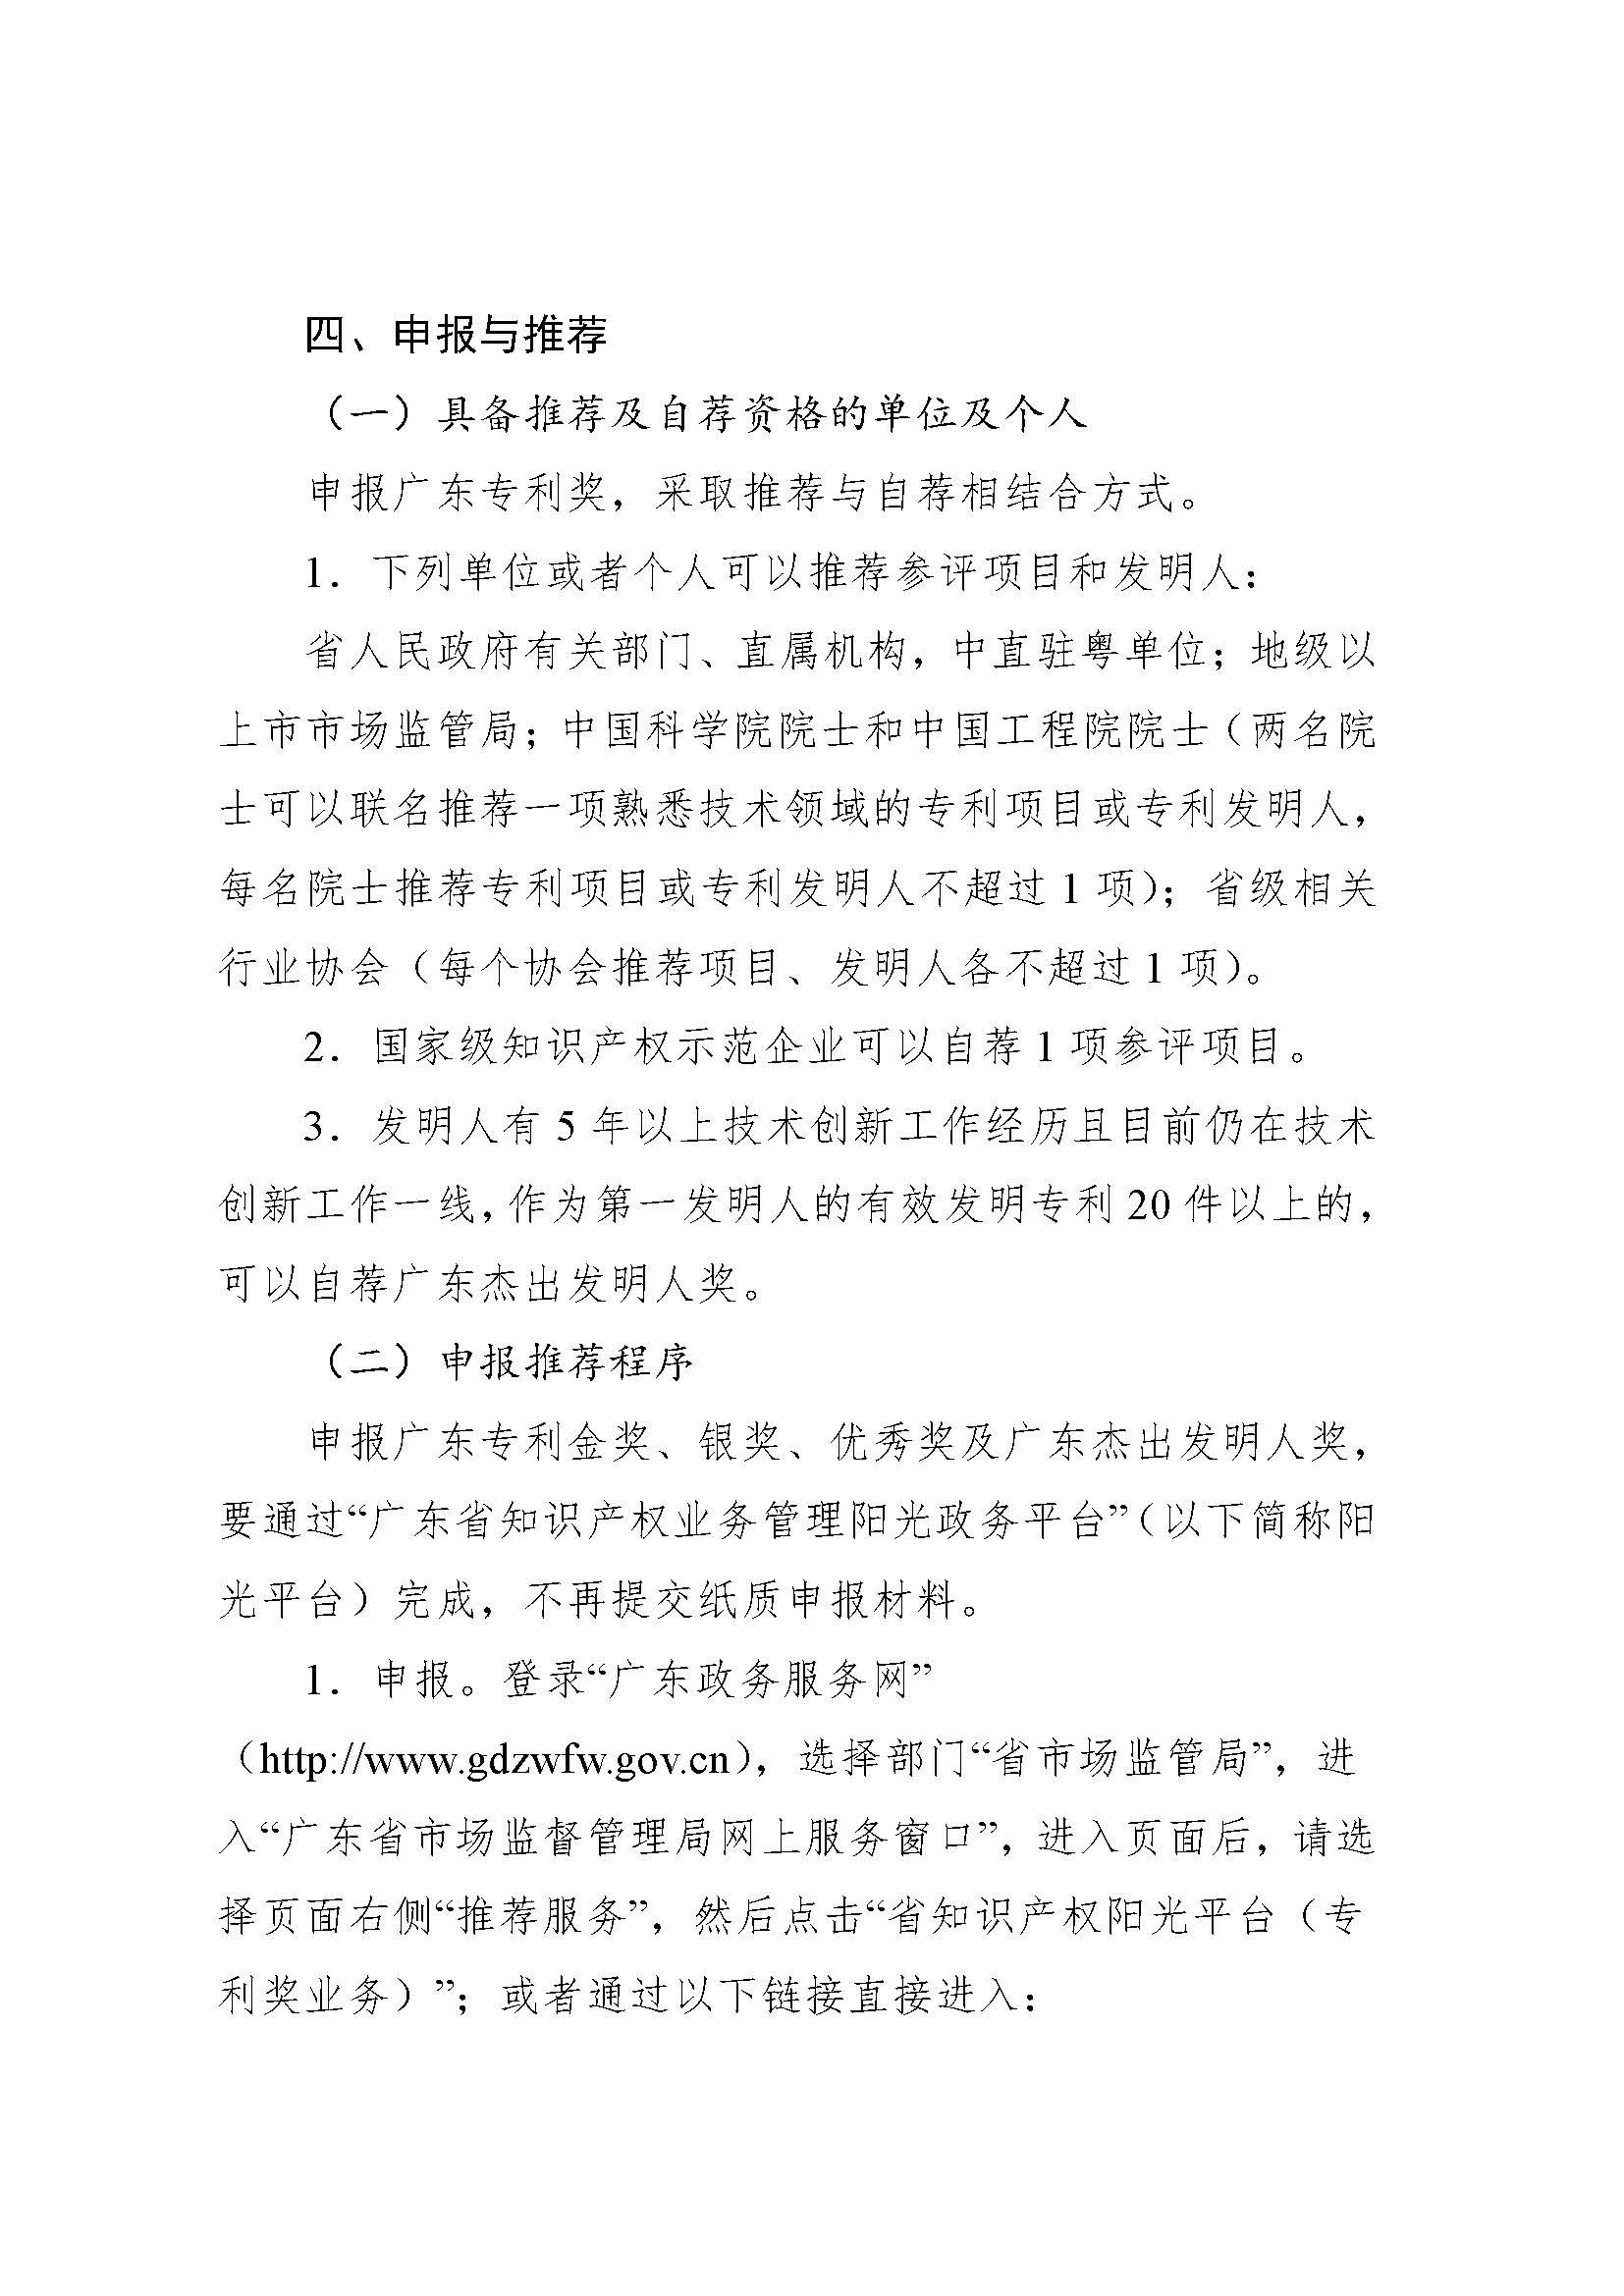 第十一届广东专利奖申报指南_页面_05